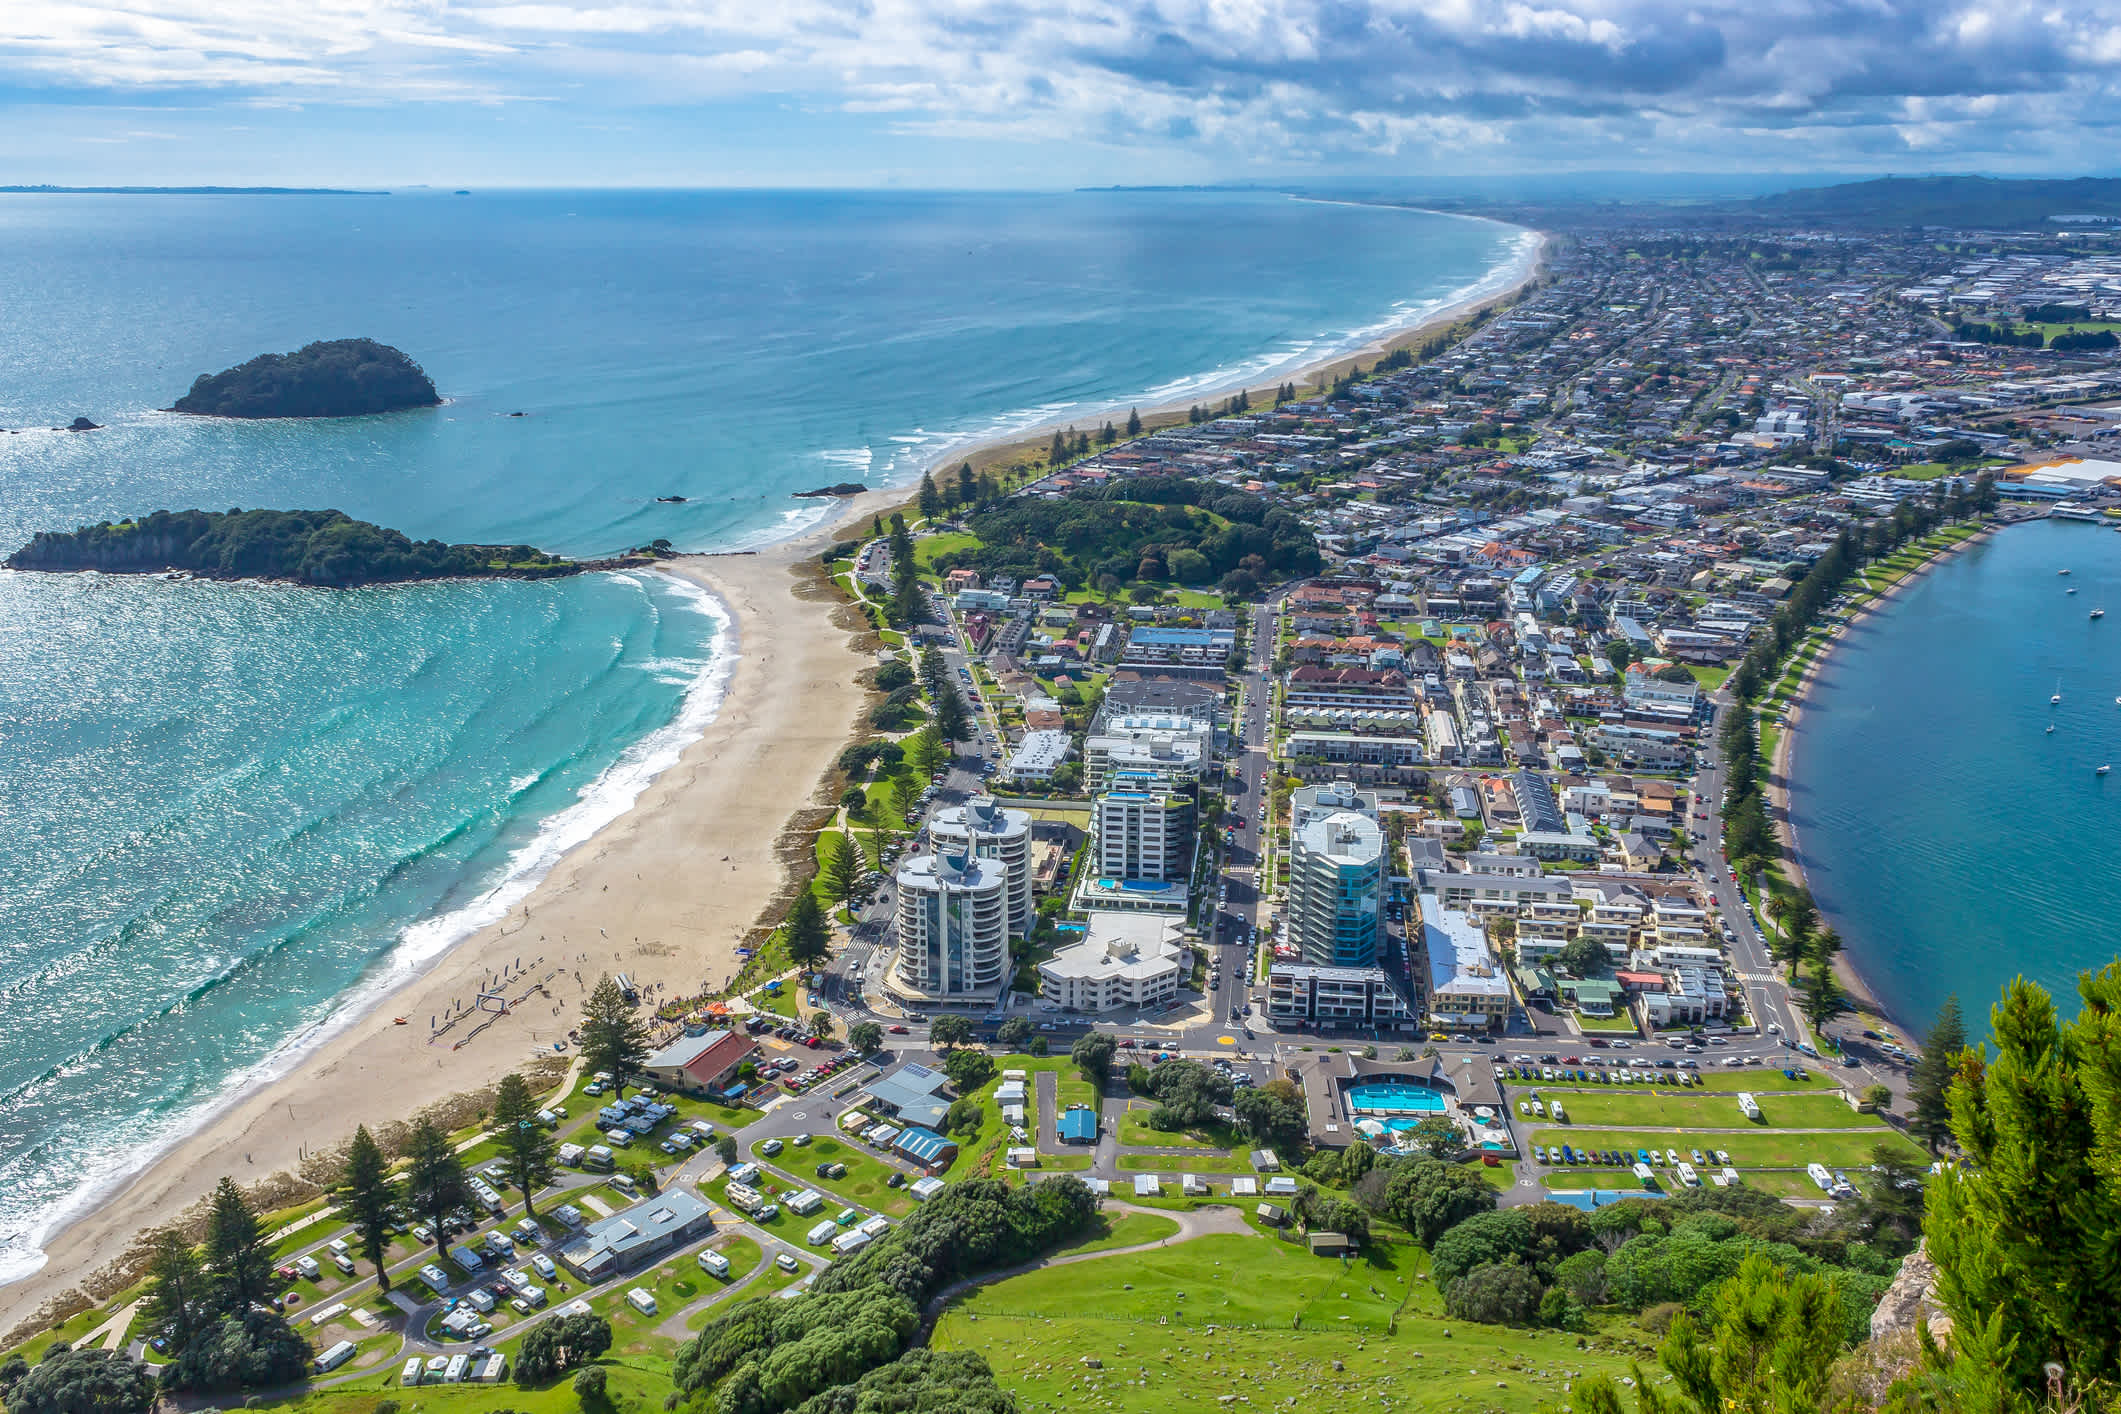 Blick vom Gipfel des Vulkans Mt Mauao im Mount Maunganui, umgangssprachlich als "The Mount" bekannt. Panoramablick auf die Stadt und die Bucht. Tauranga, Bay of Plenty, Nordinsel, Neuseeland.